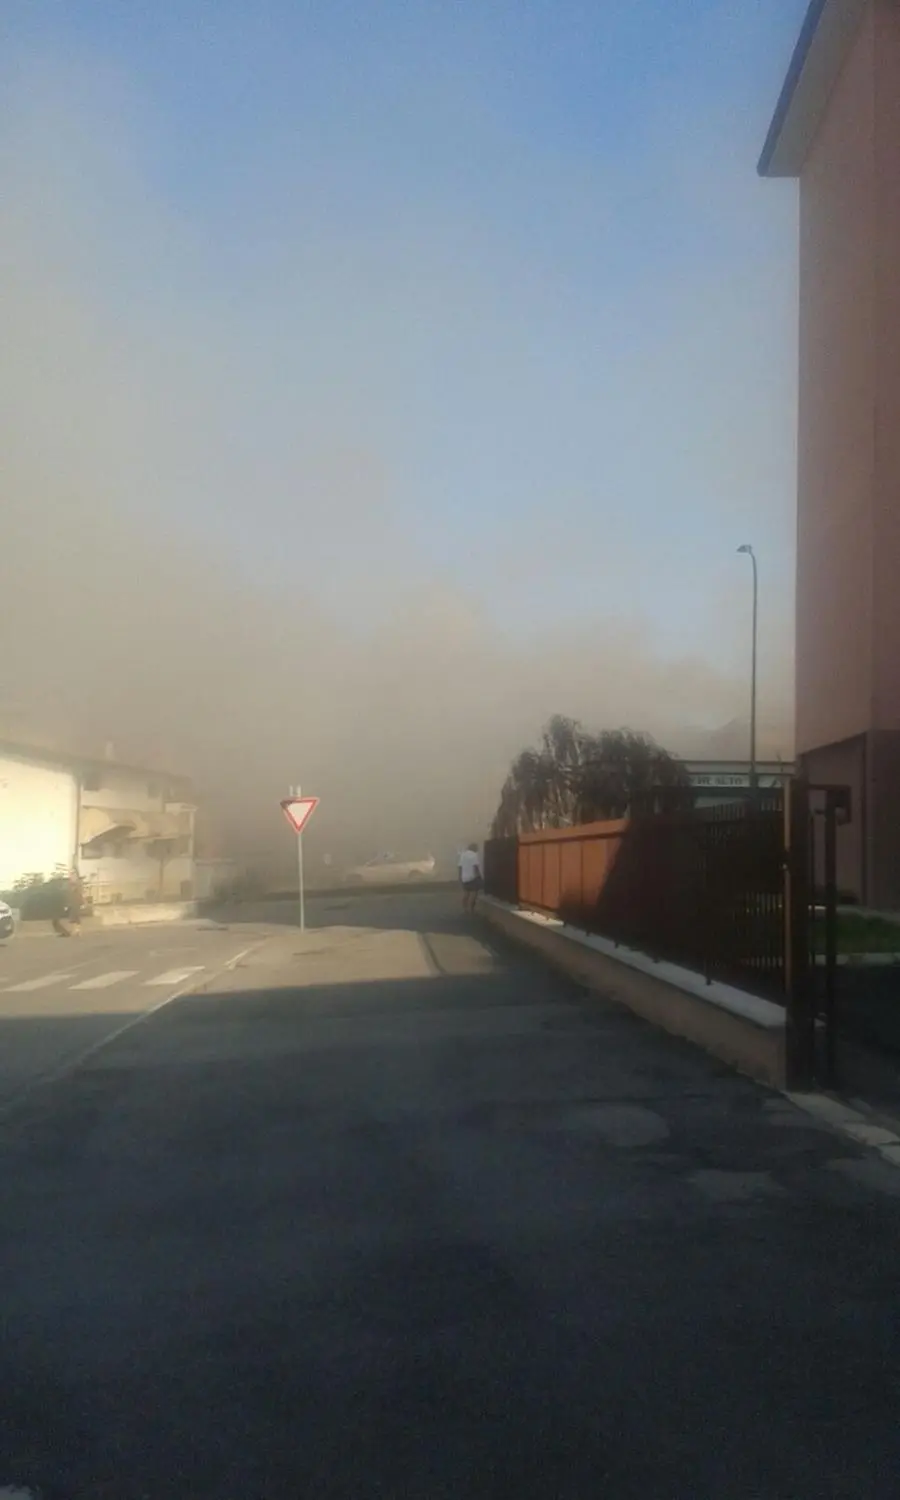 Negozio distrutto dalle fiamme a Desenzano